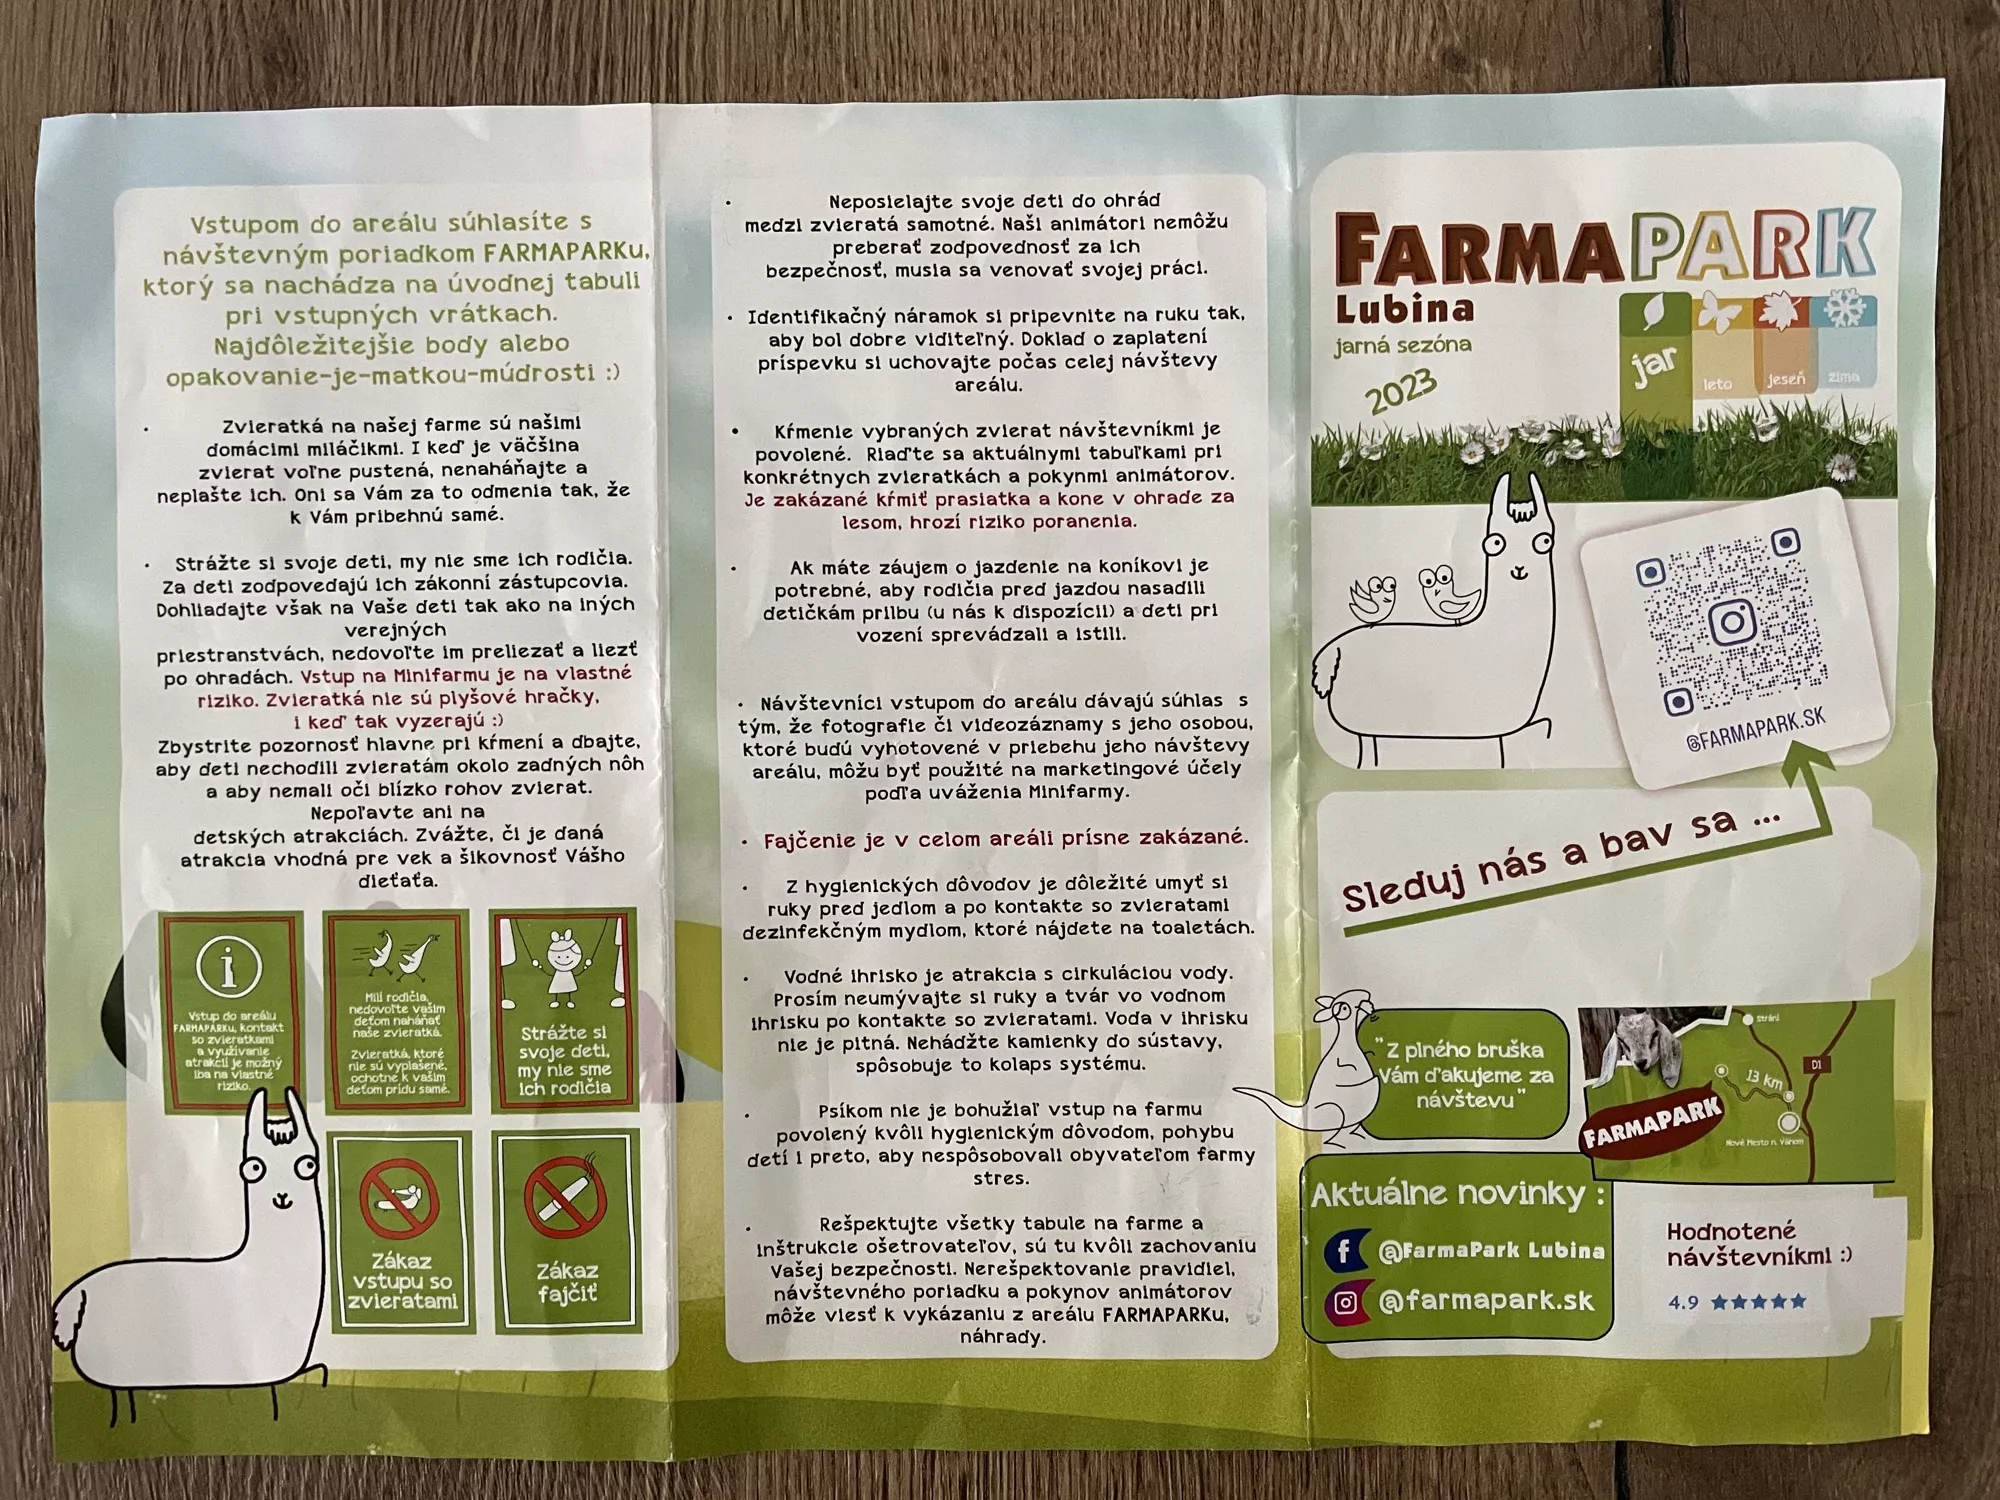 FarmaPARK Lubina 2023 - instrukcie pre navstevnikov